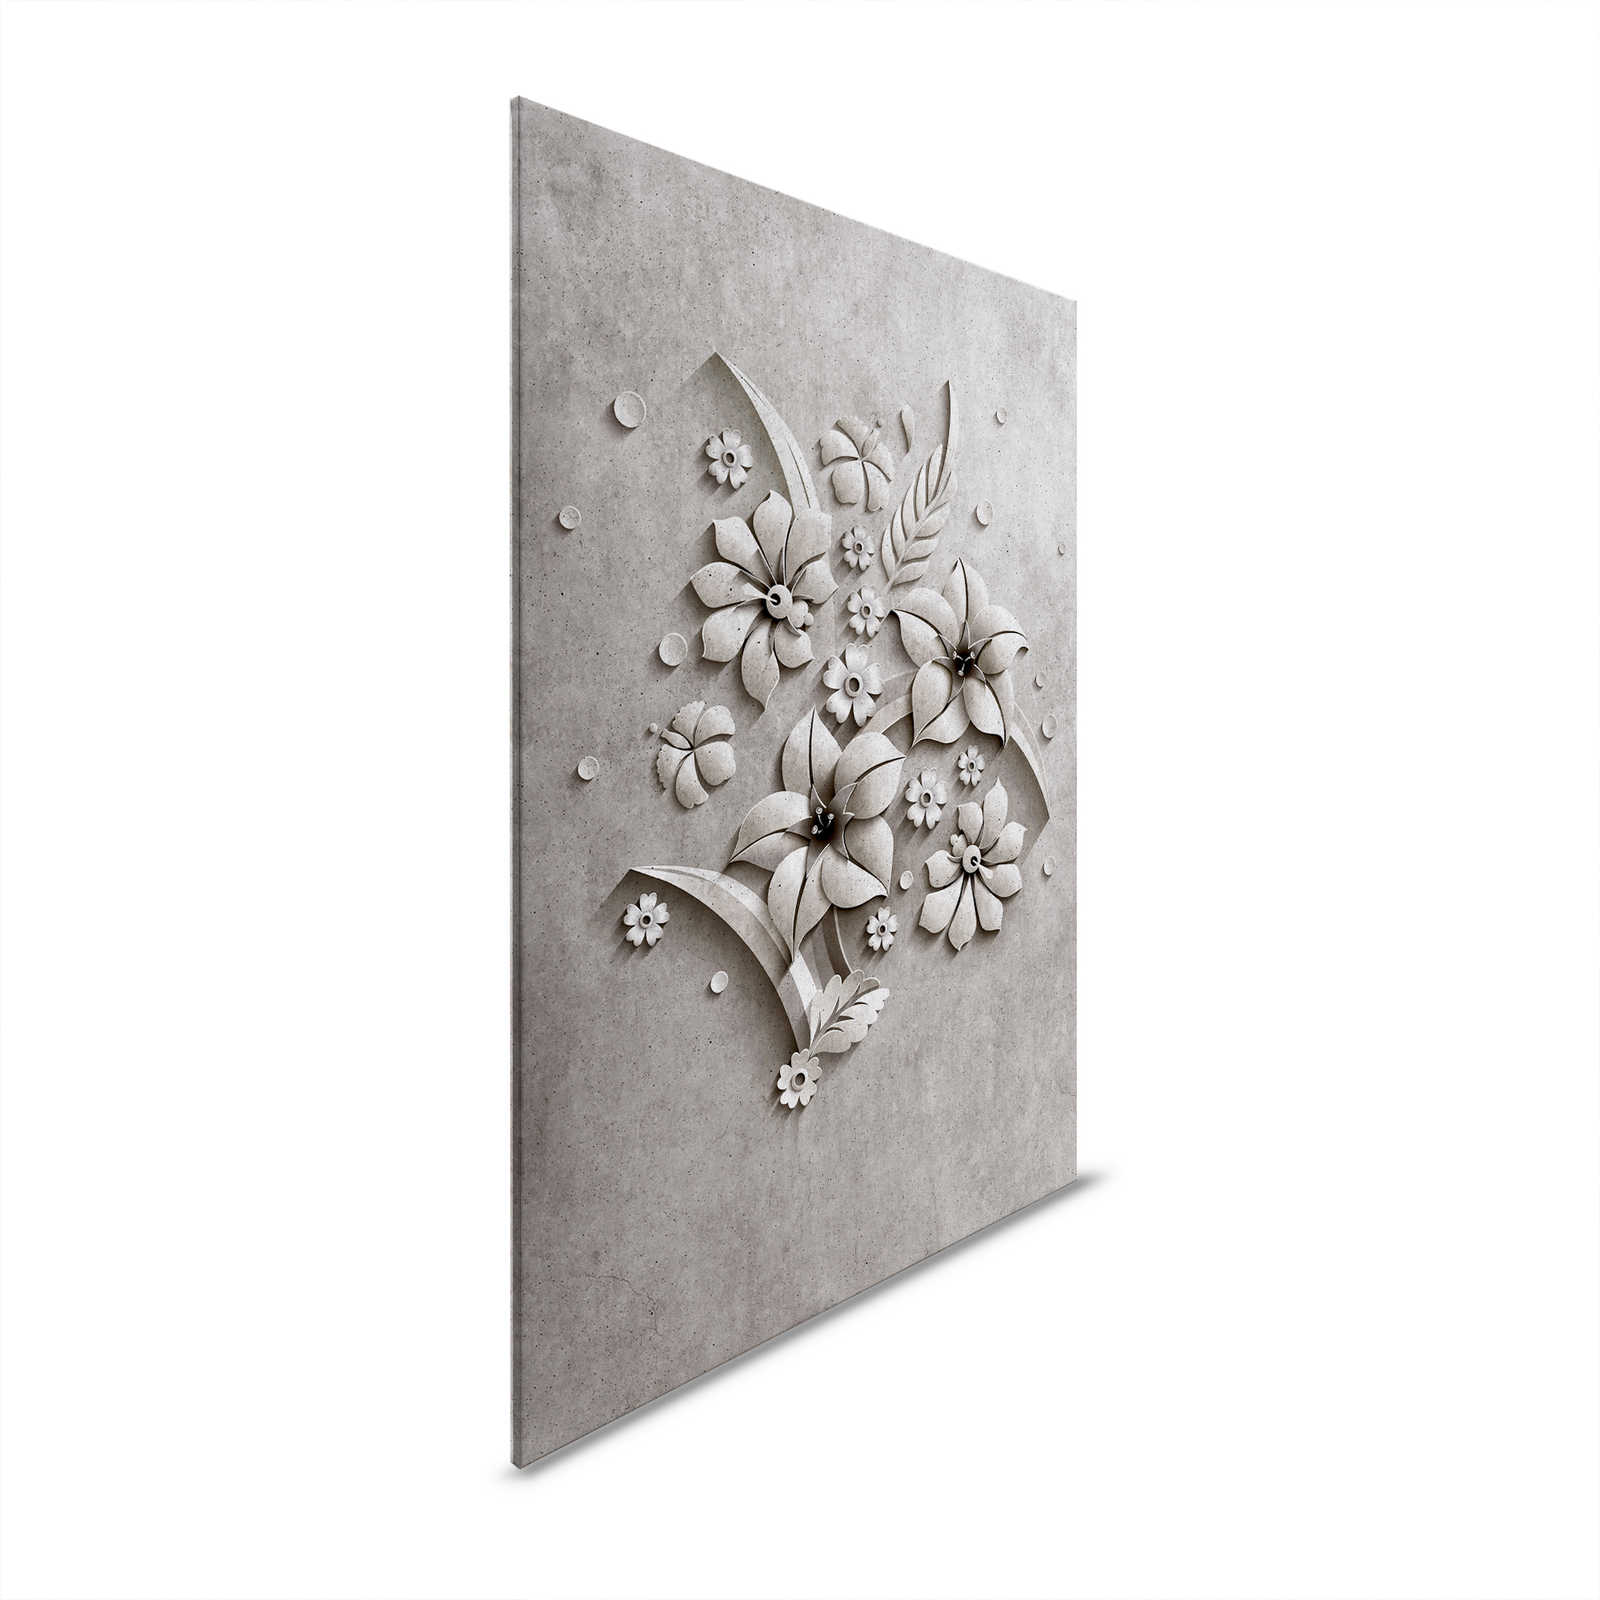 Relief 1 - Leinwandbild in Beton Struktur eines Blütenrelief – 1,20 m x 0,80 m
